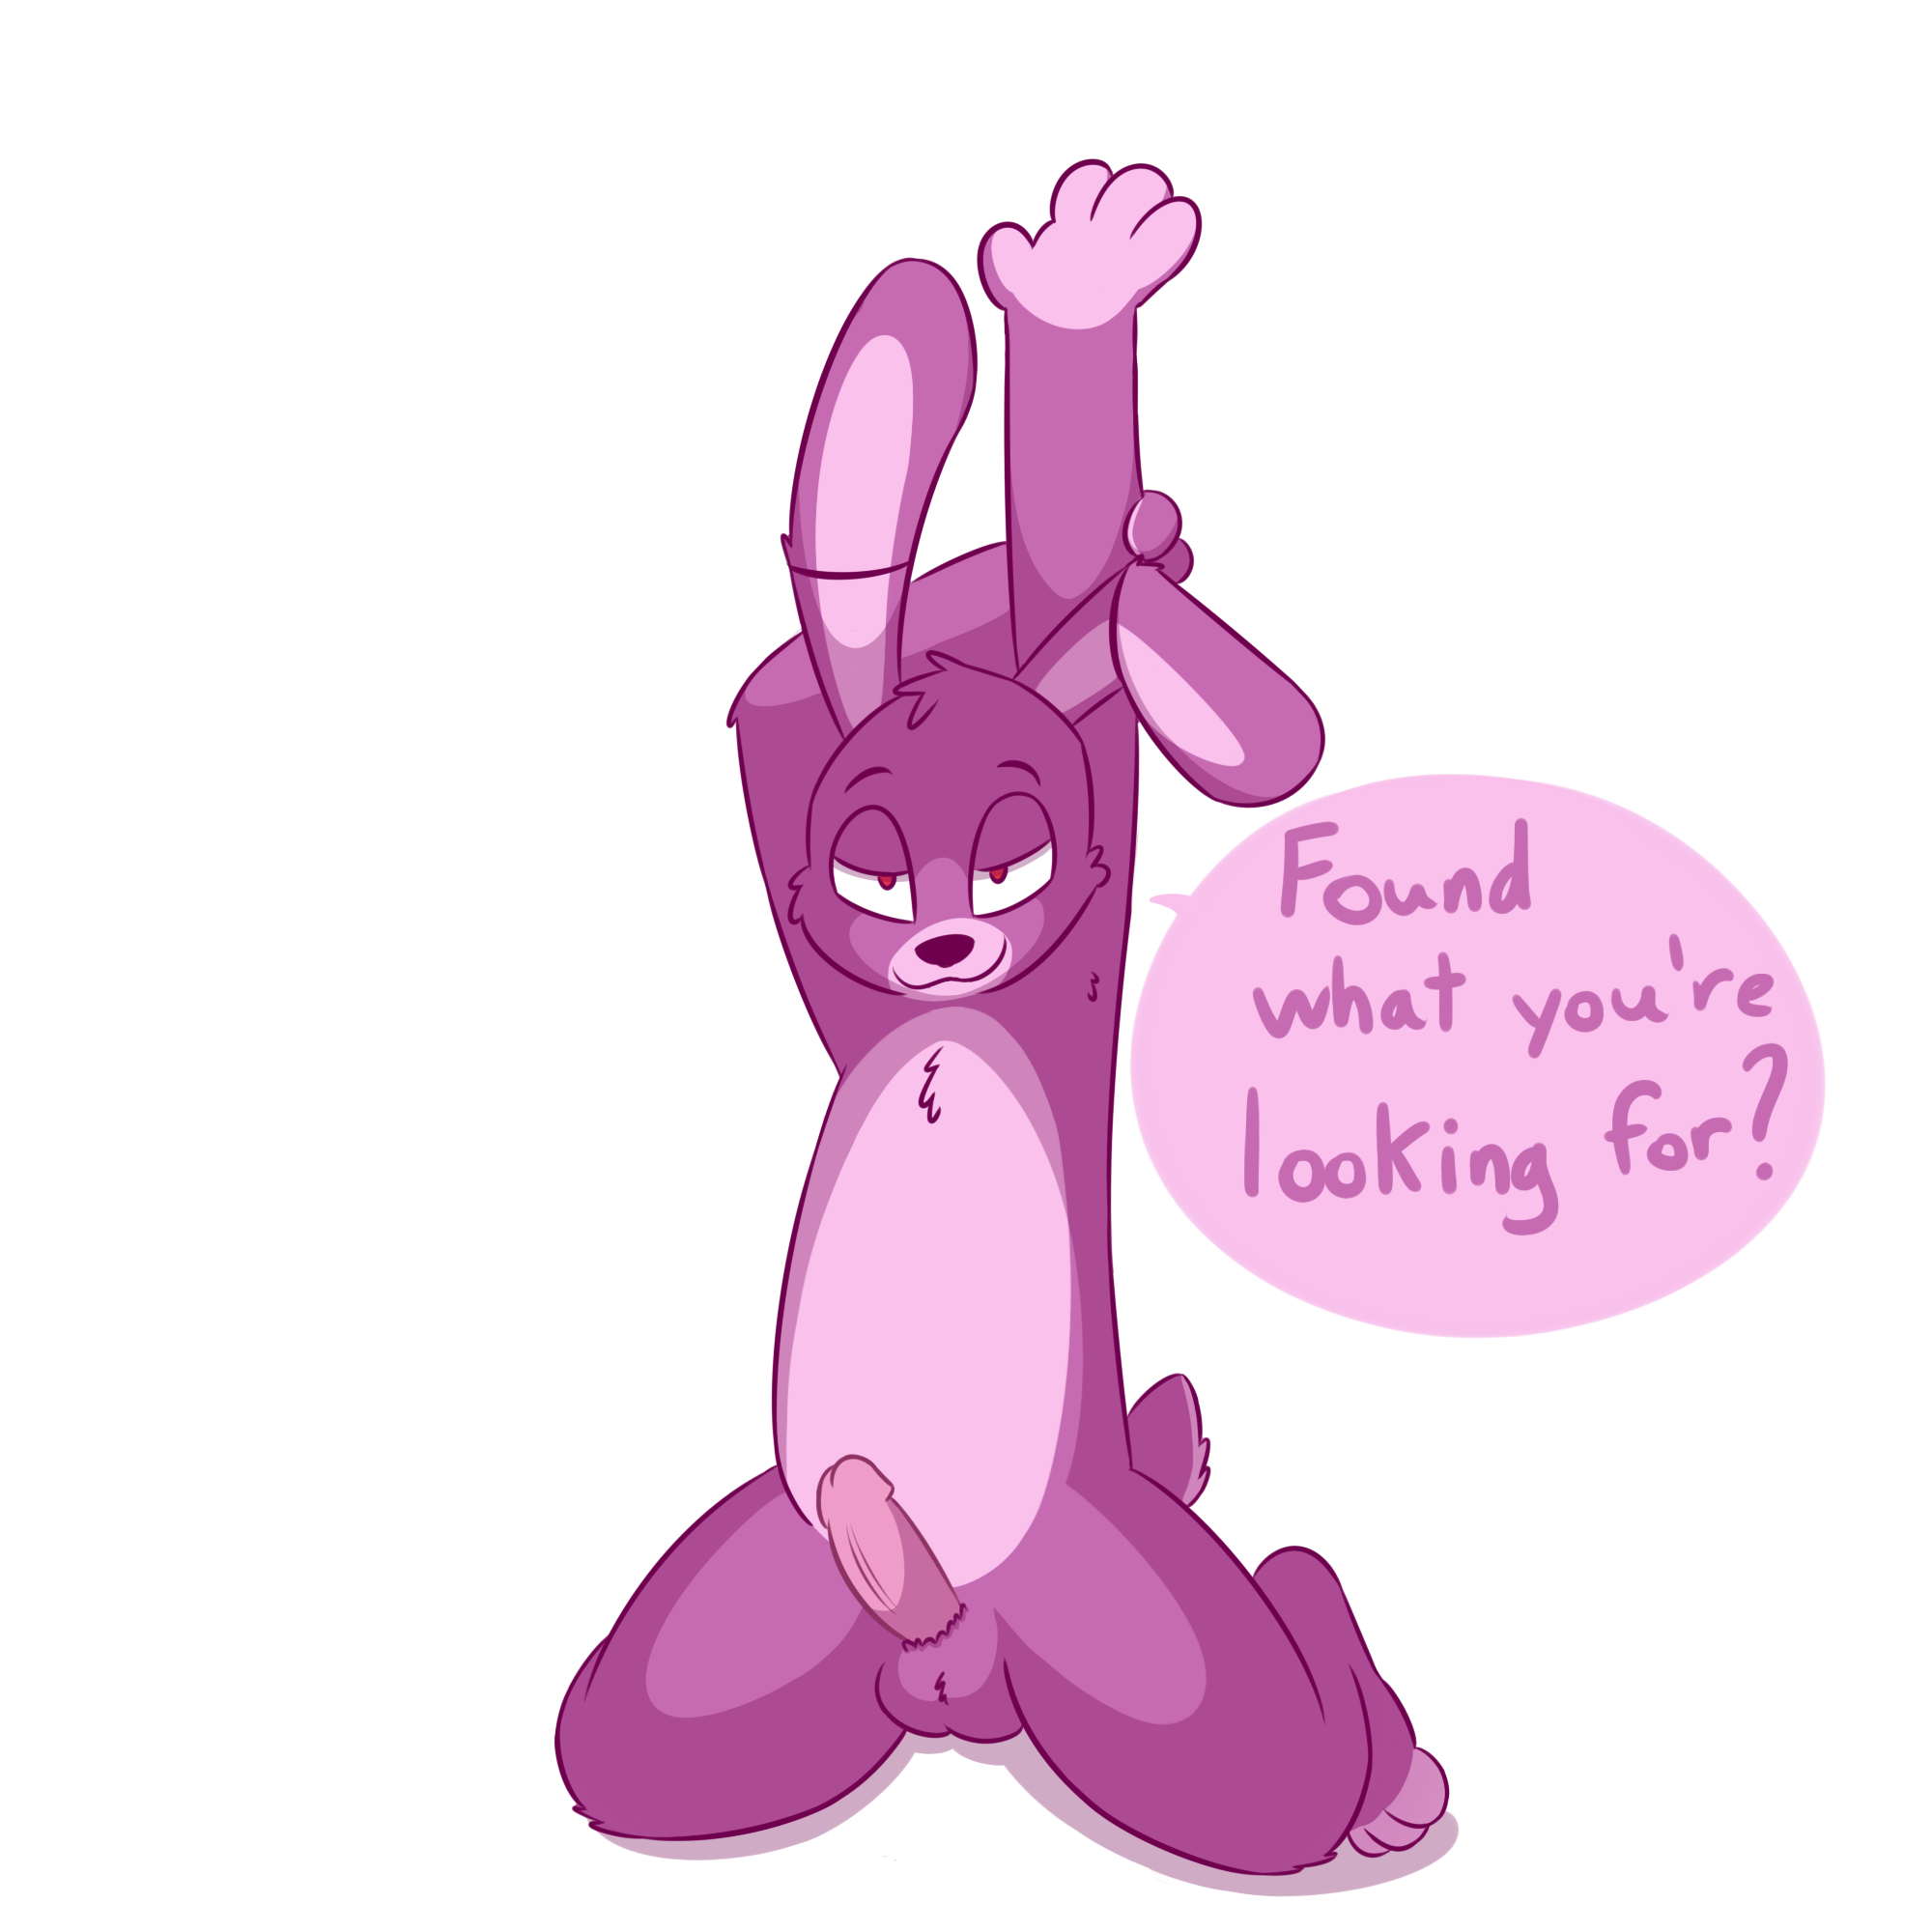 Bonnie rabbit nudes